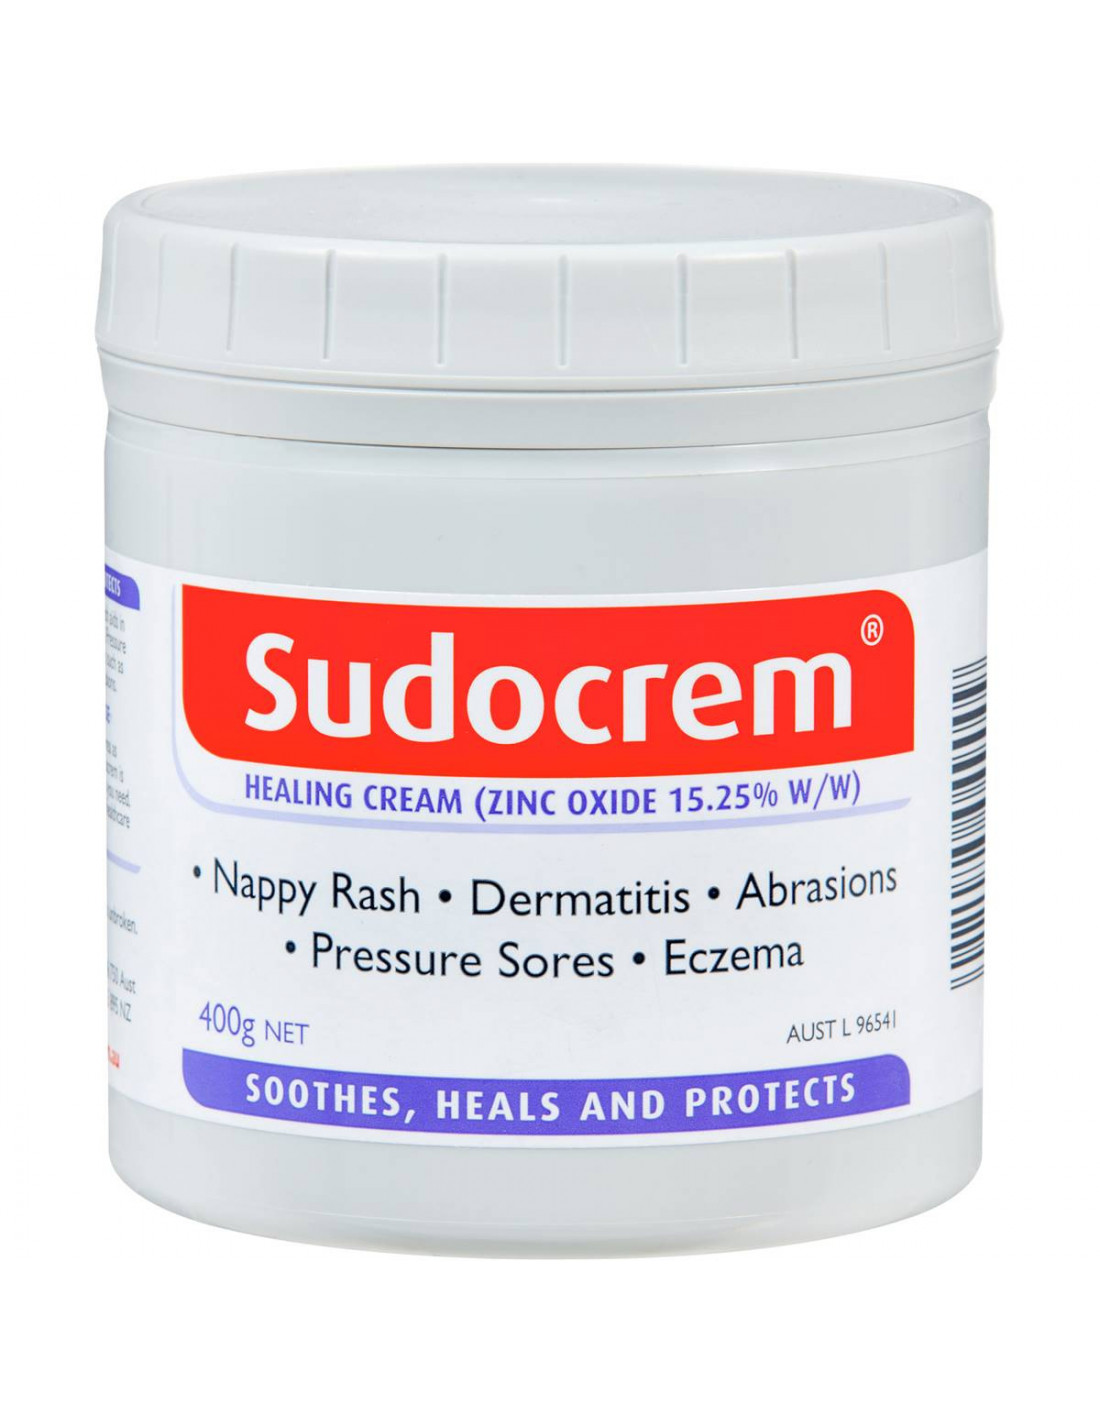 6x Original Sudocrem Antiseptic Healing Cream 400g 14oz, 53% OFF